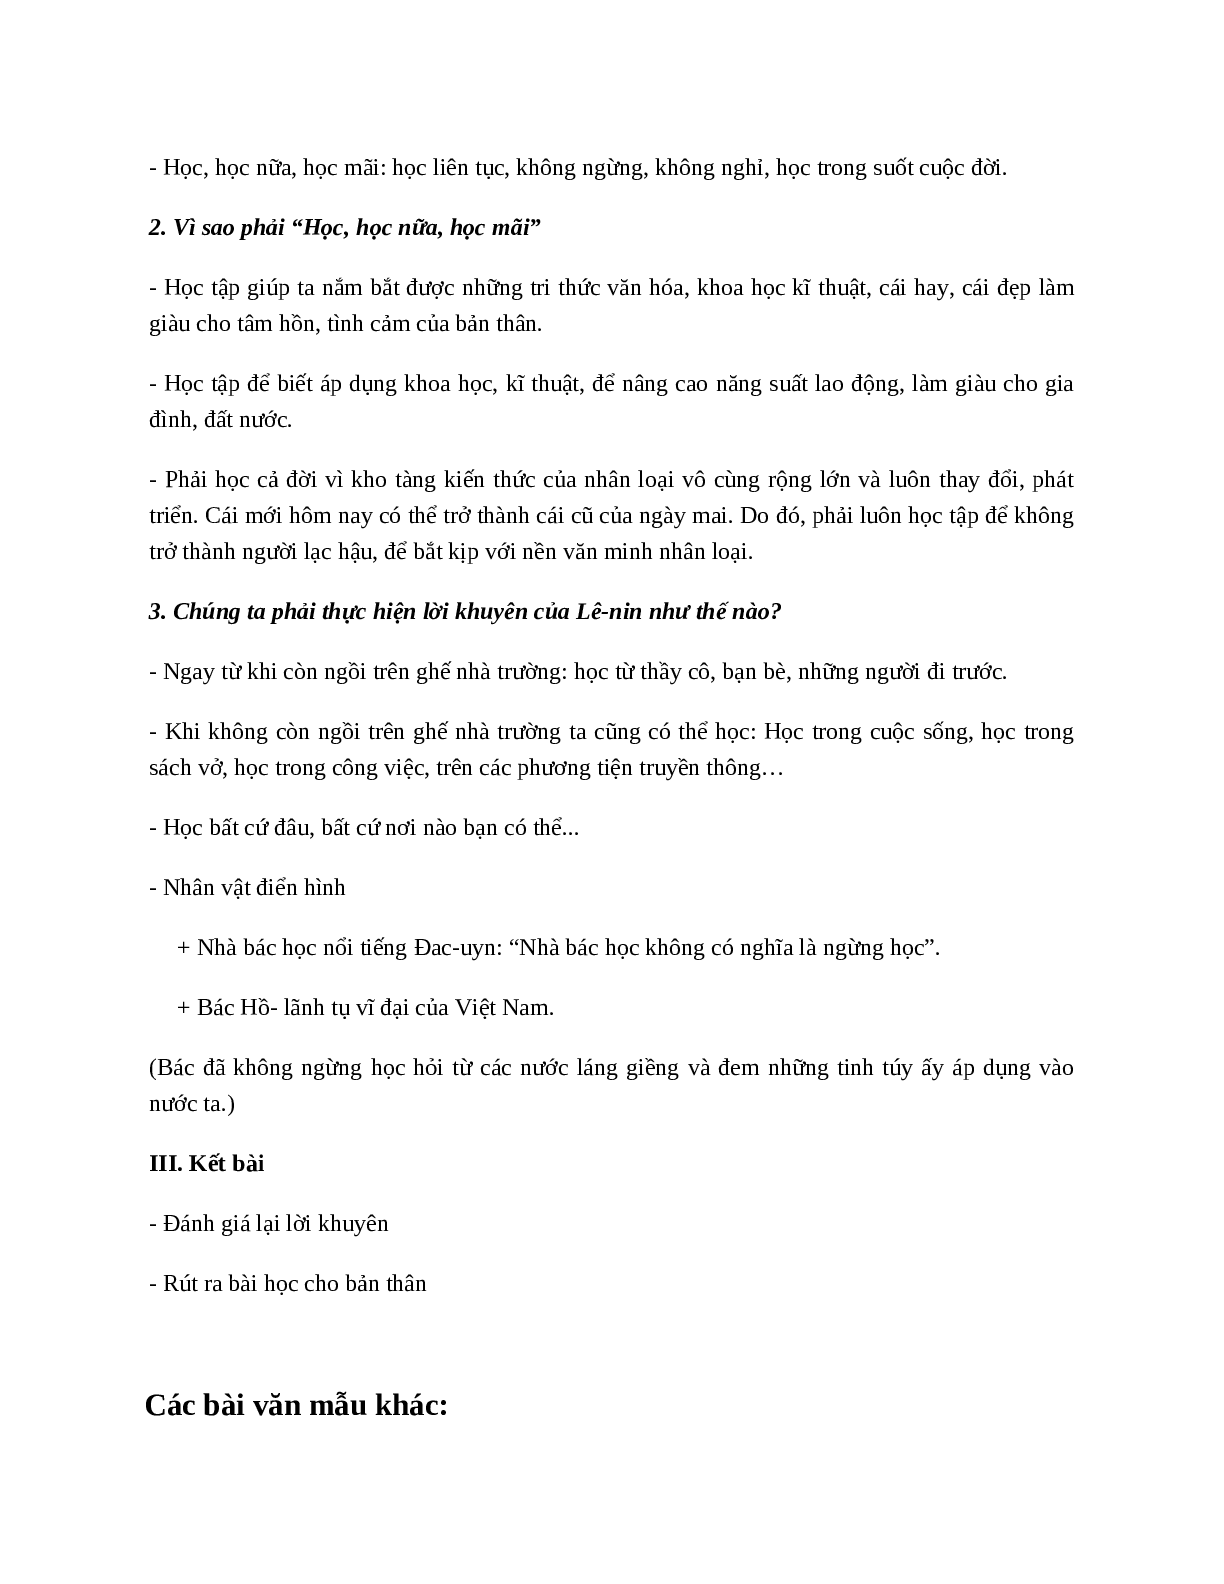 TOP 15 bài Giải thích câu nói Học, học nữa, học mãi của Lê-nin SIÊU HAY (trang 4)